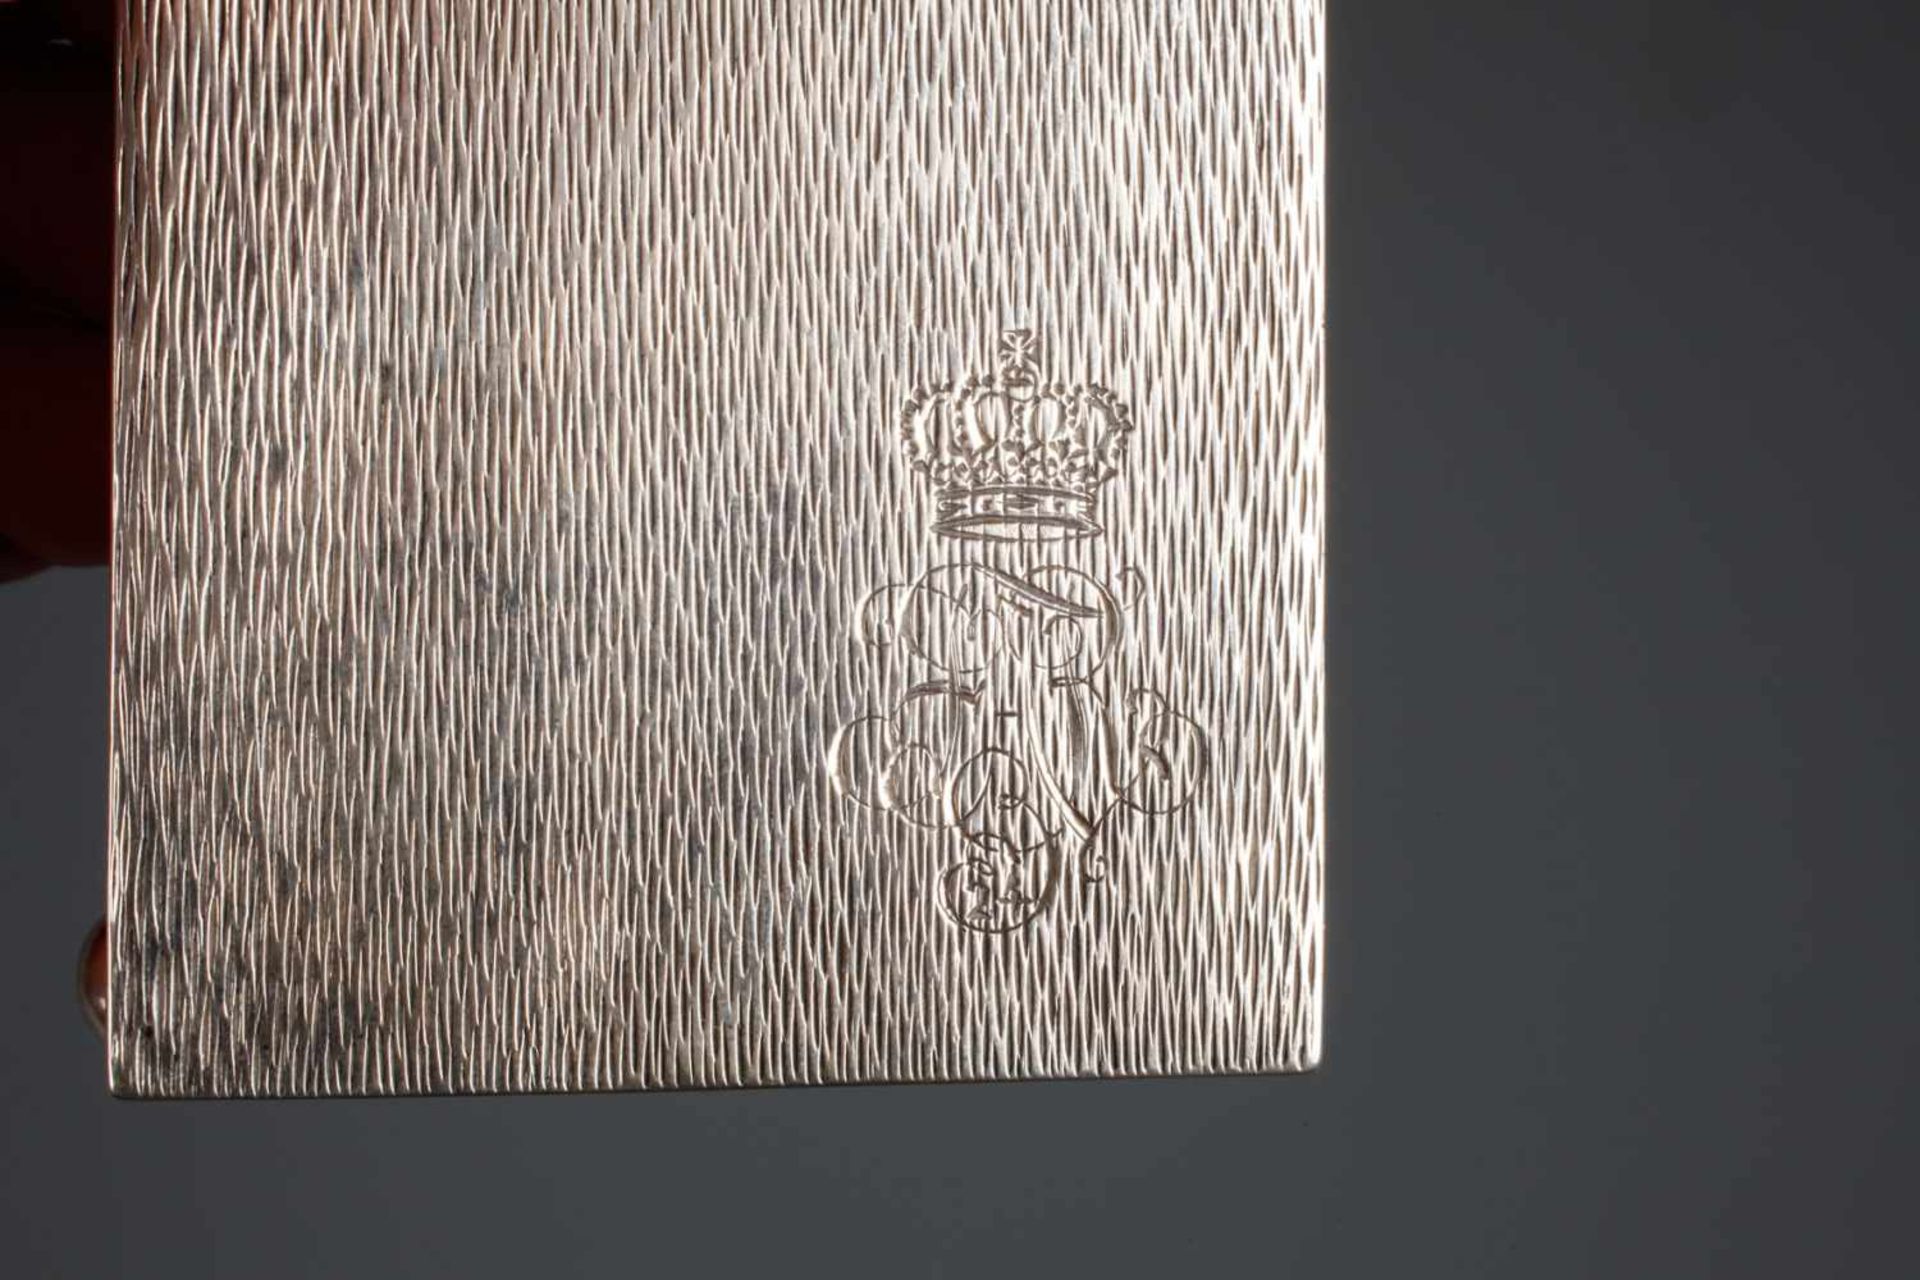 Silber Streichholzhalter aus Adelsbesitz um 1930, gestempelt Halbmond, Krone, 800, unleserliche - Bild 2 aus 4